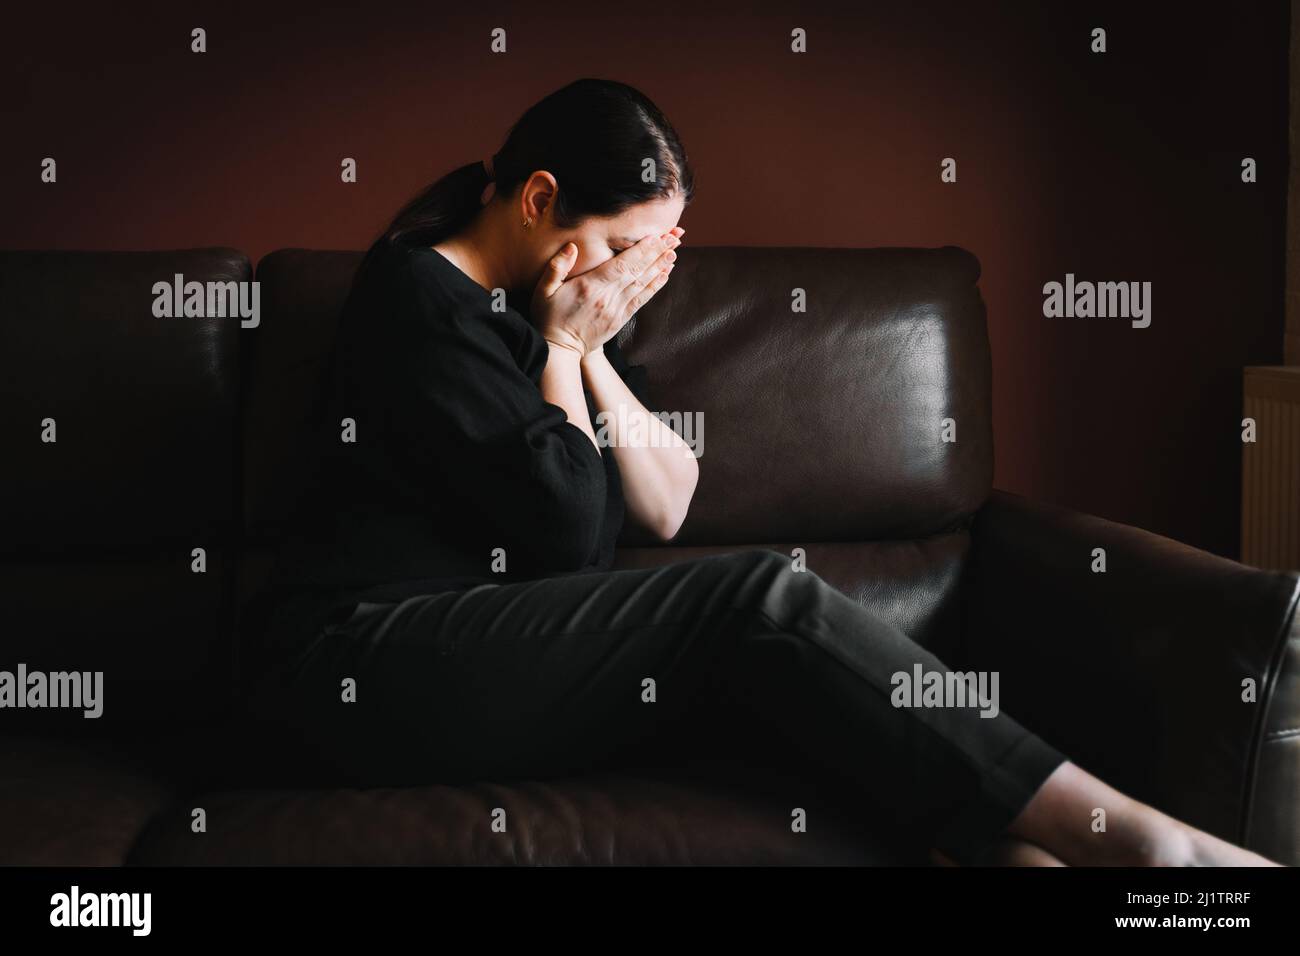 Giovane donna con capelli lunghi e scuri che indossa una blusa nera, pantaloni, seduta su un divano marrone, coprendo il viso con le mani. Foto Stock